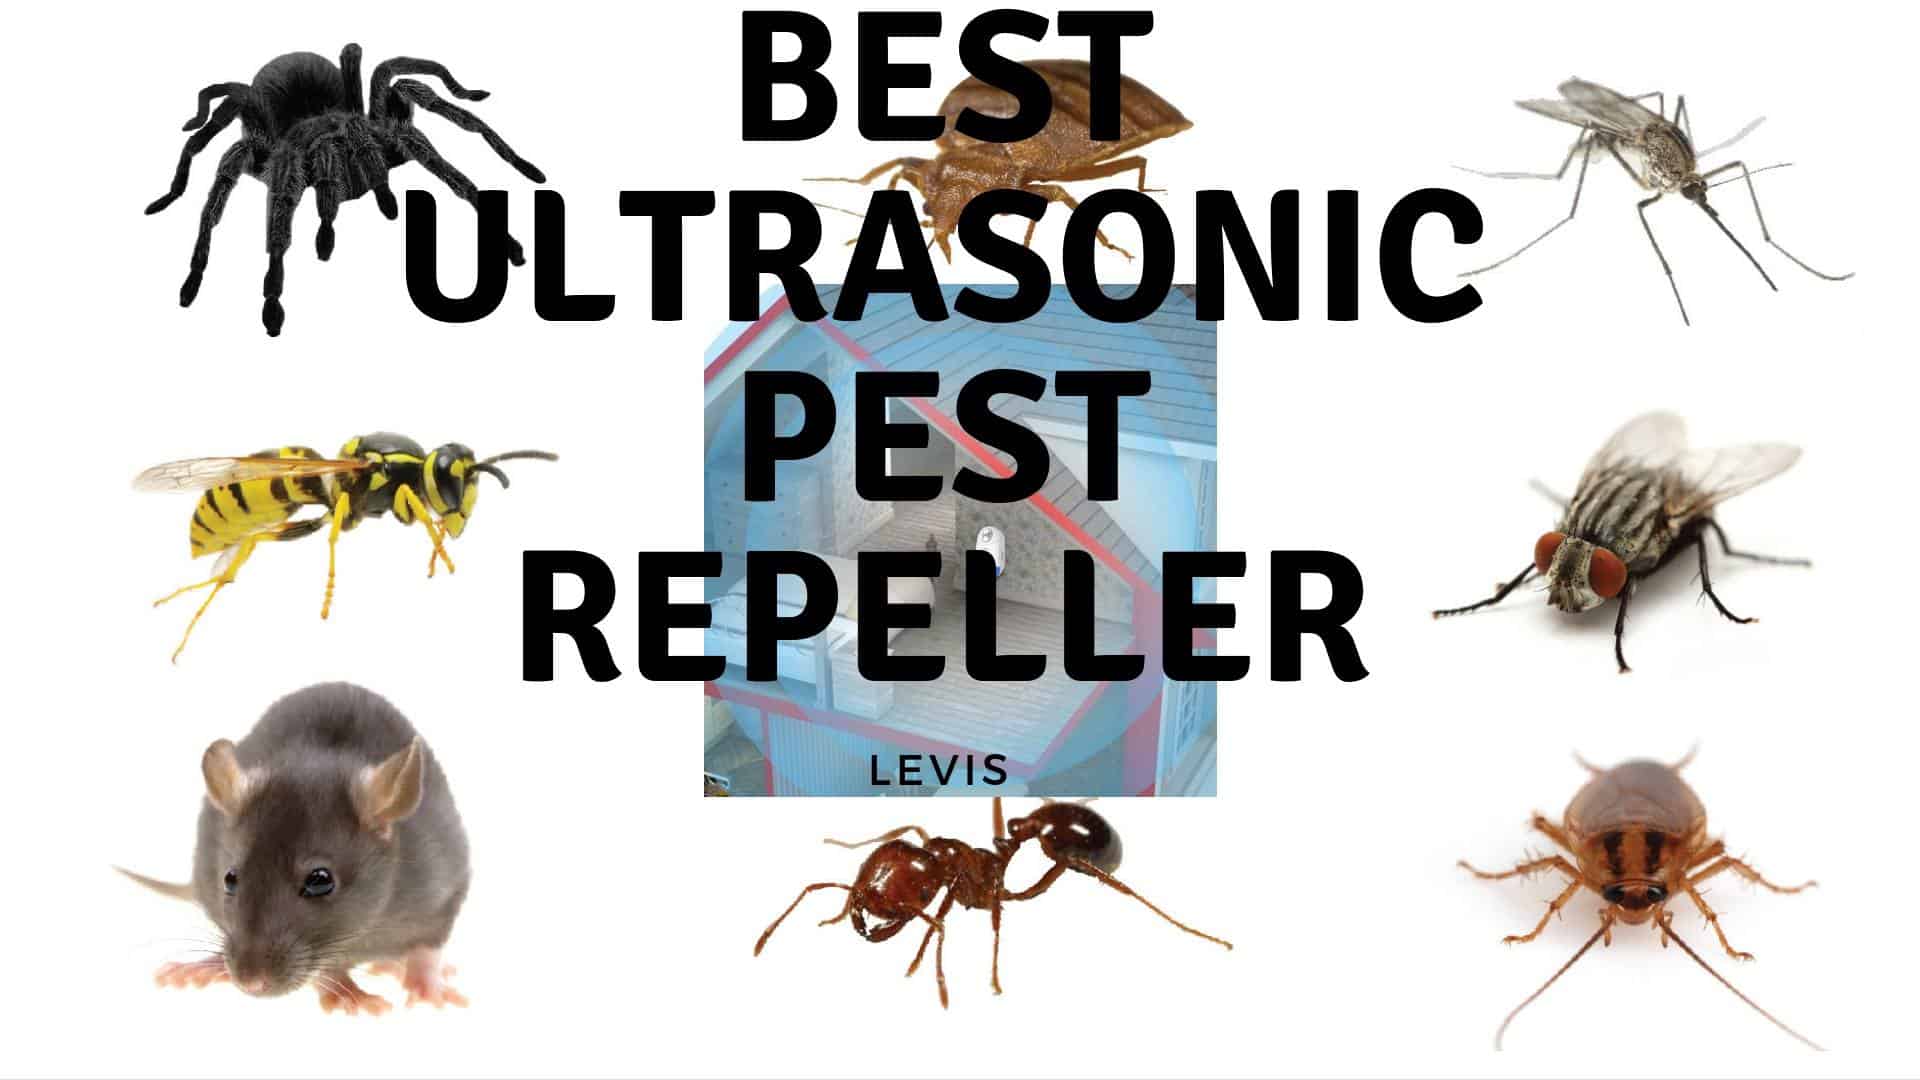 best ultrasonic pest repeller reviews Roachexpert.com